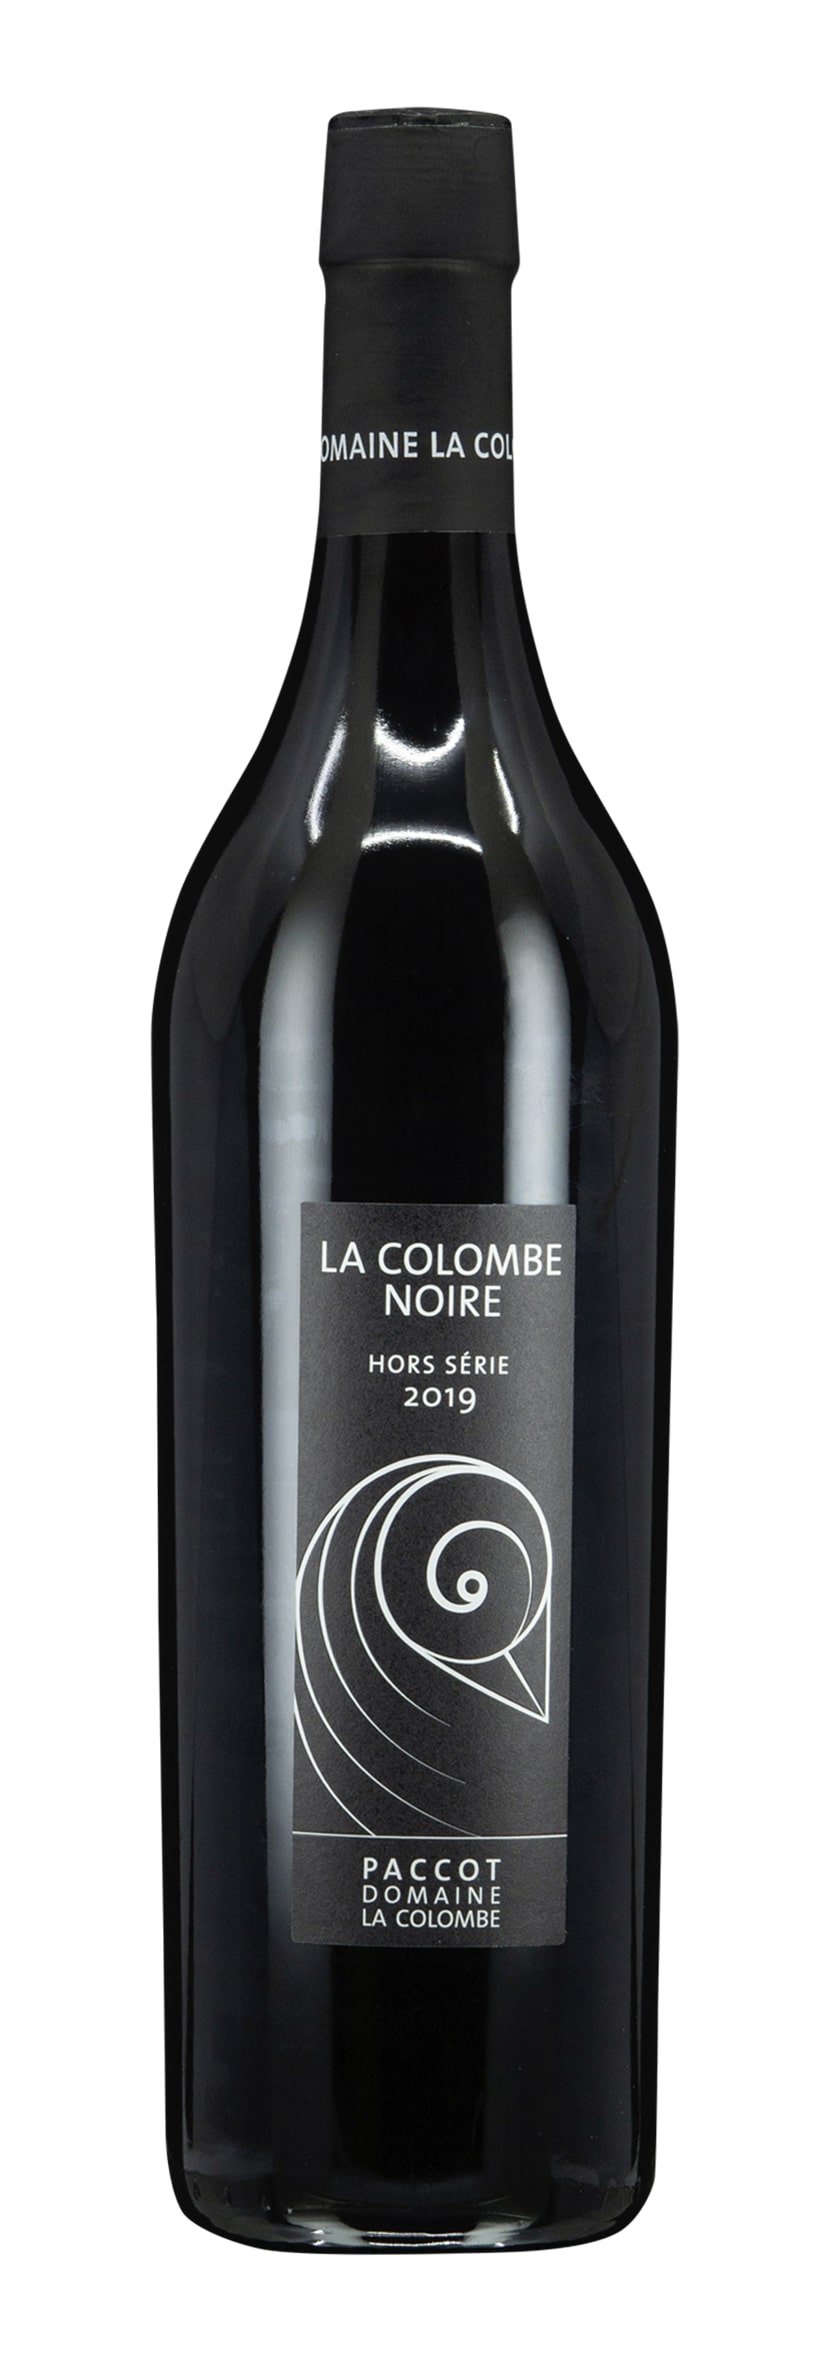 La Côte AOC La Colombe Noire 2019